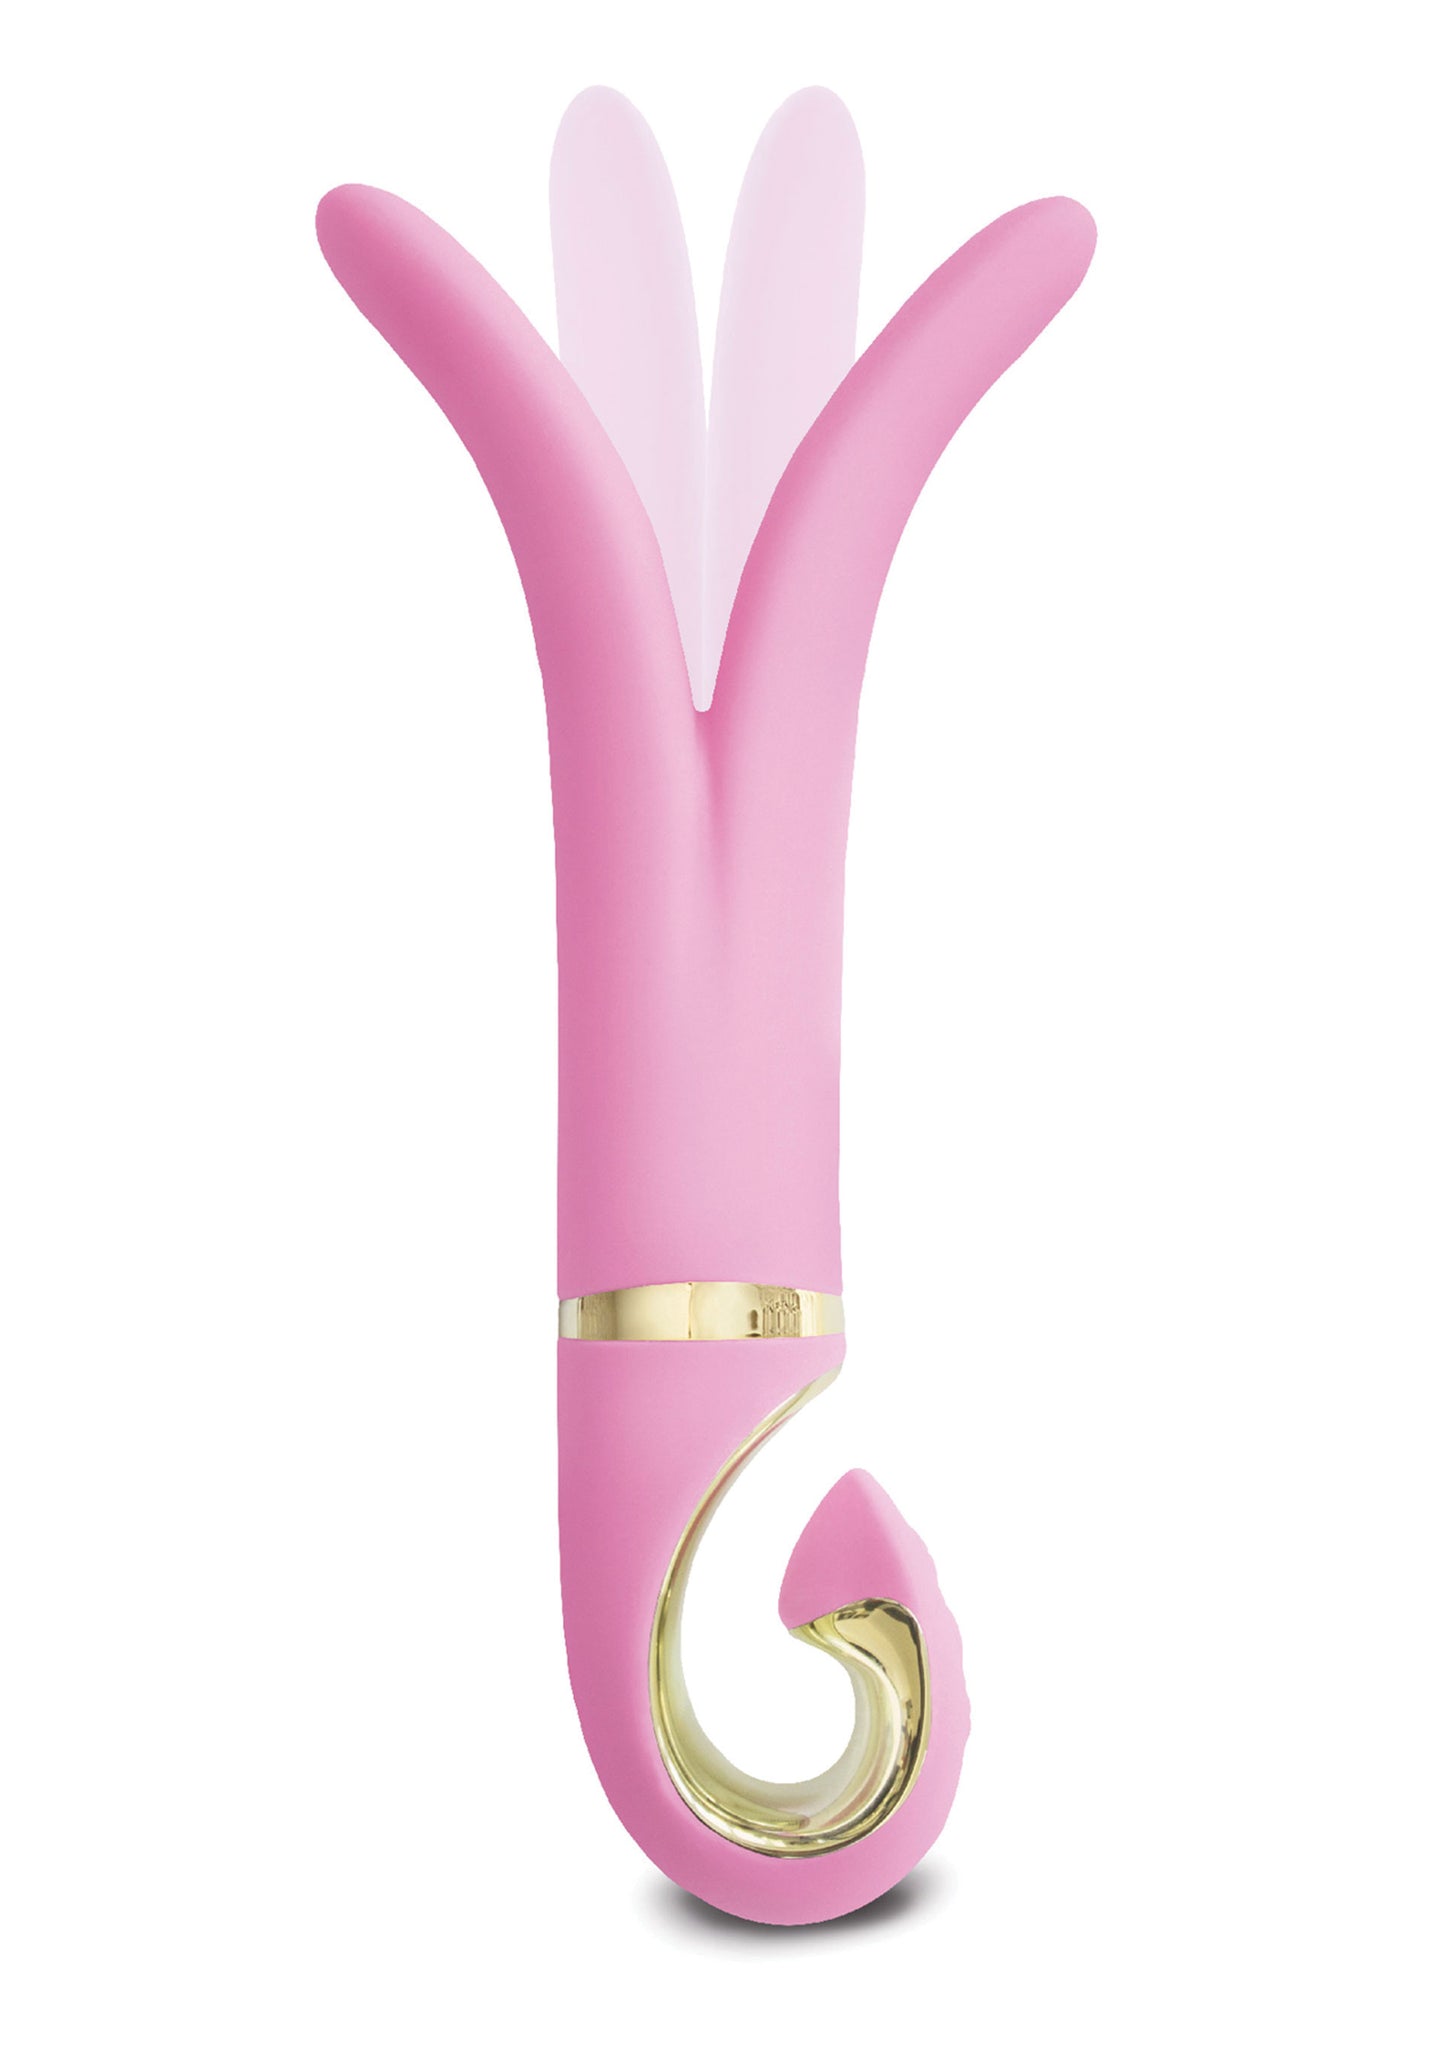 Vibratore vaginale in silicone Gvibe 3